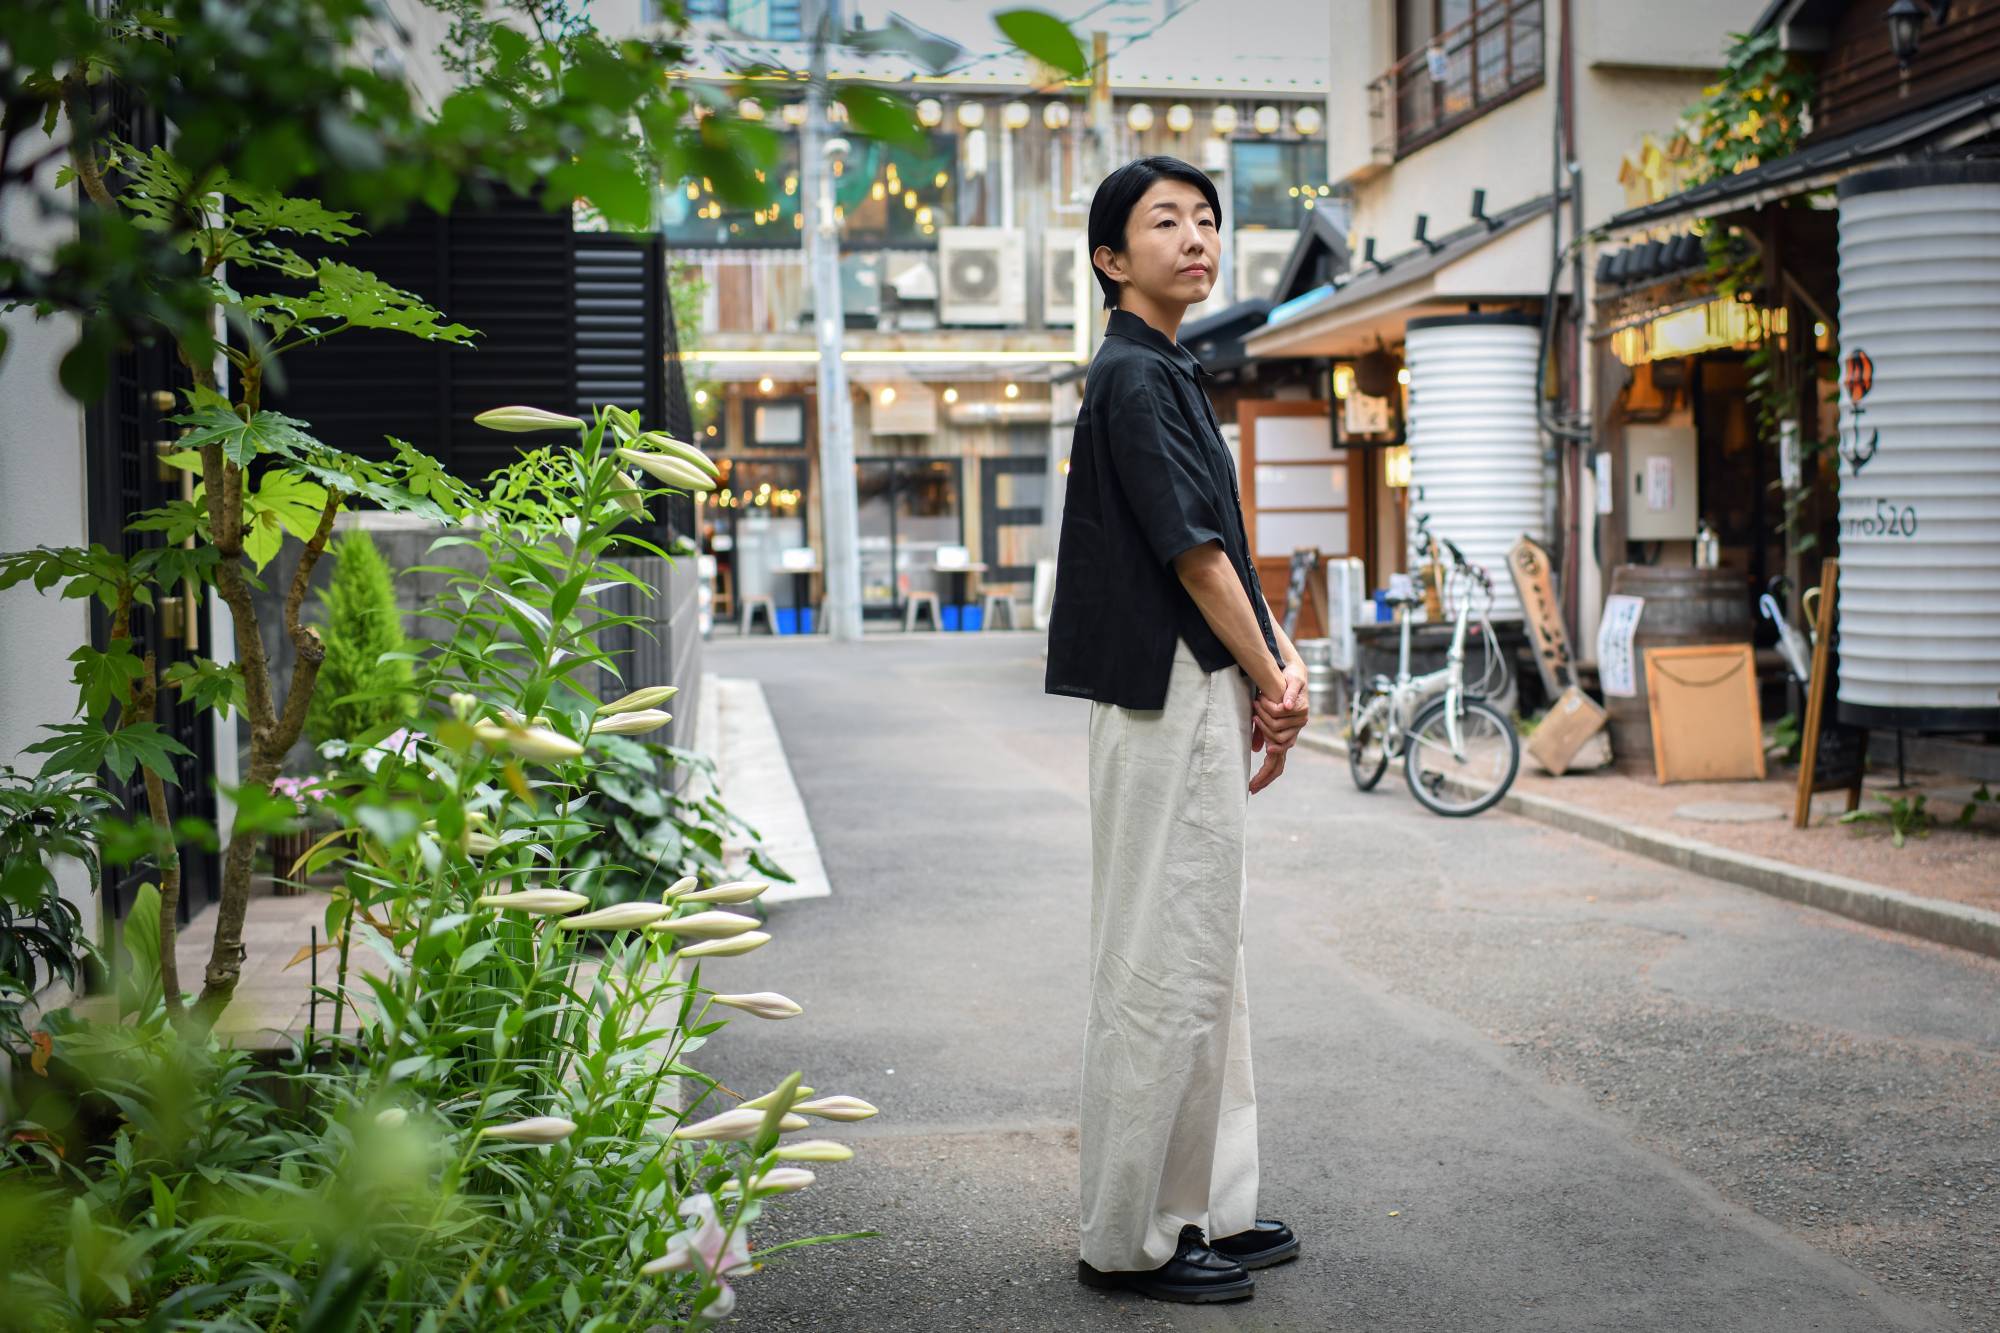 Filmmaker Chie Hayakawa imagines a Japan where the elderly volunteer to ...